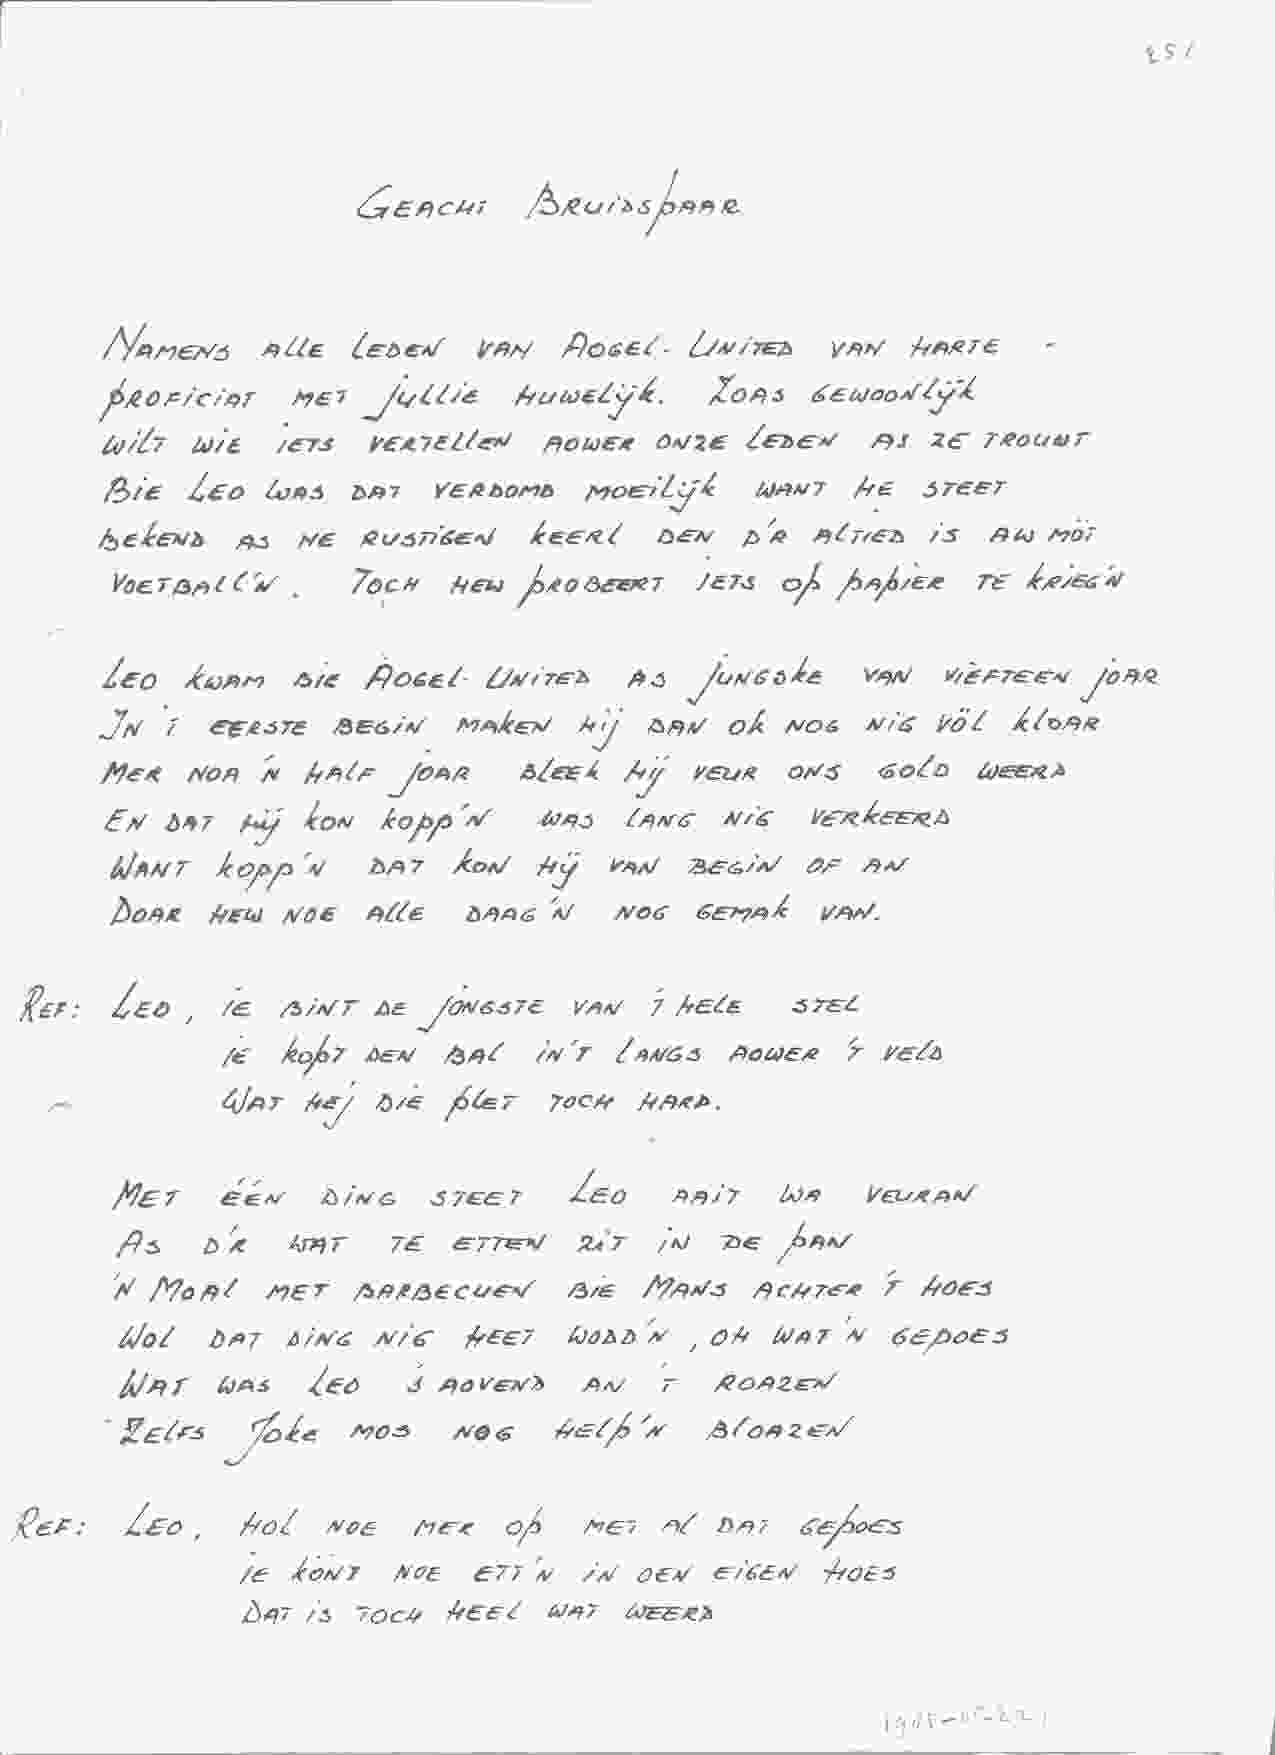 Songtekst bij bruiloft van Leo en Joke op 1985-08-02